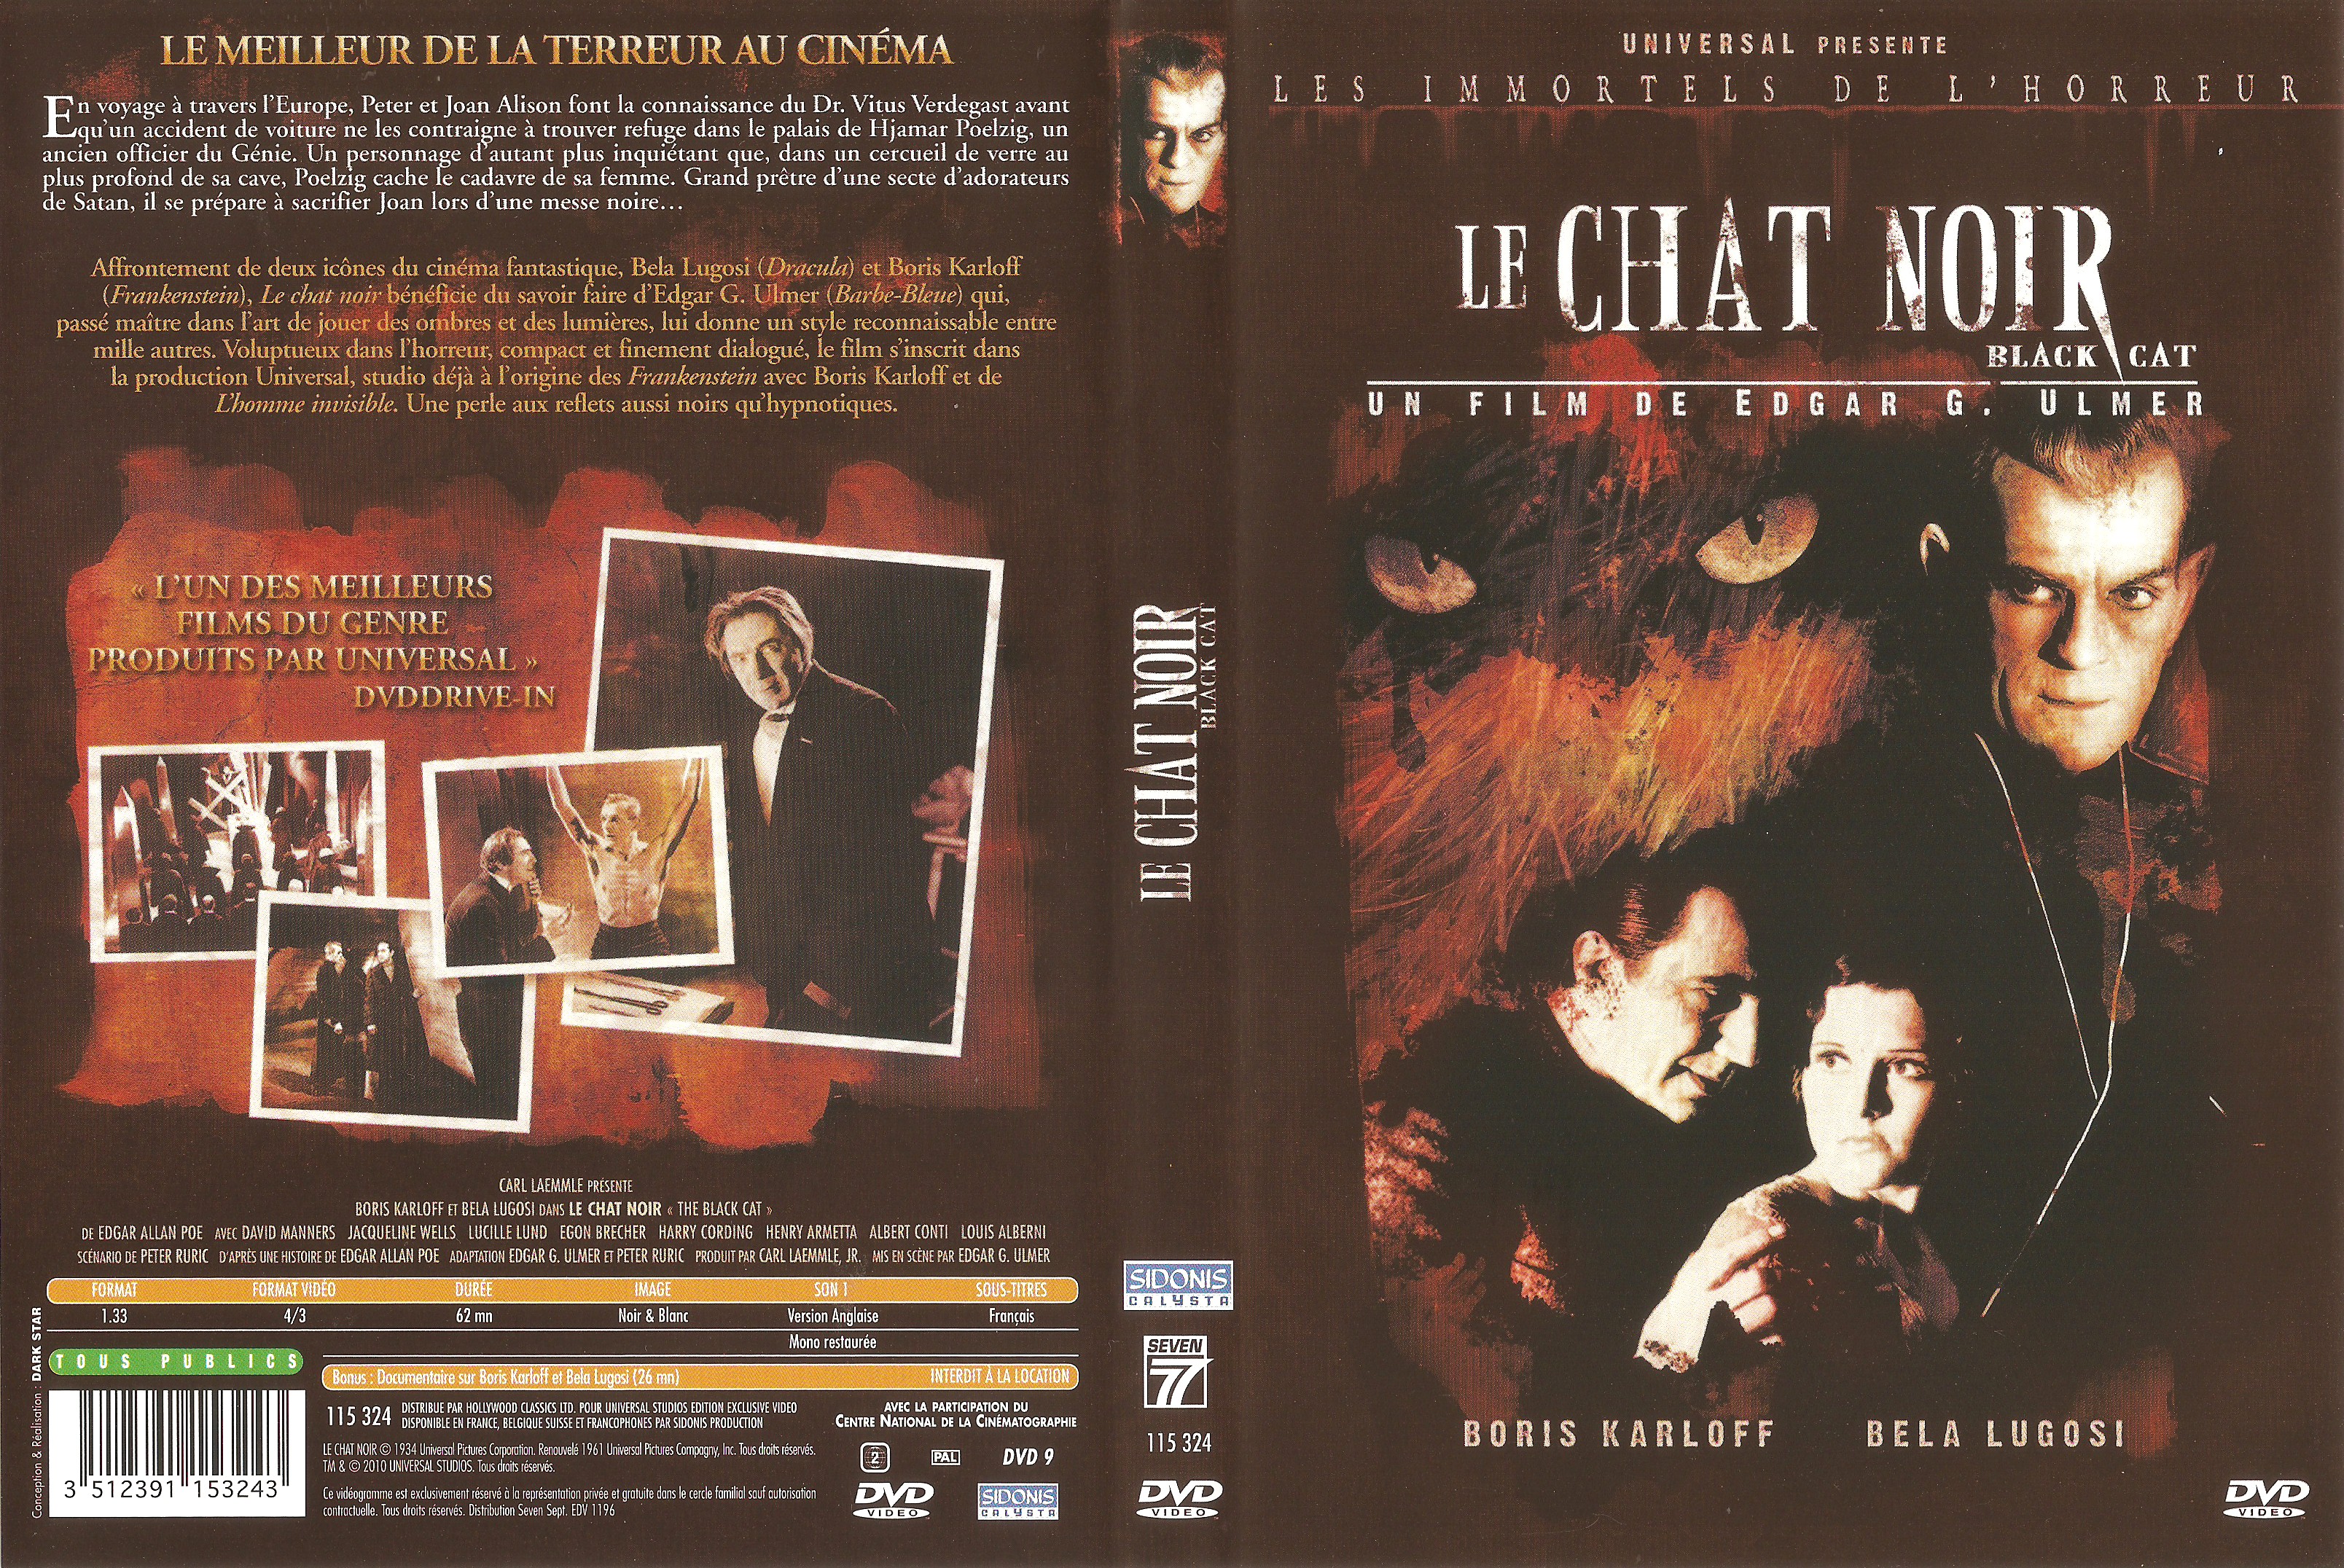 Jaquette DVD Le chat noir